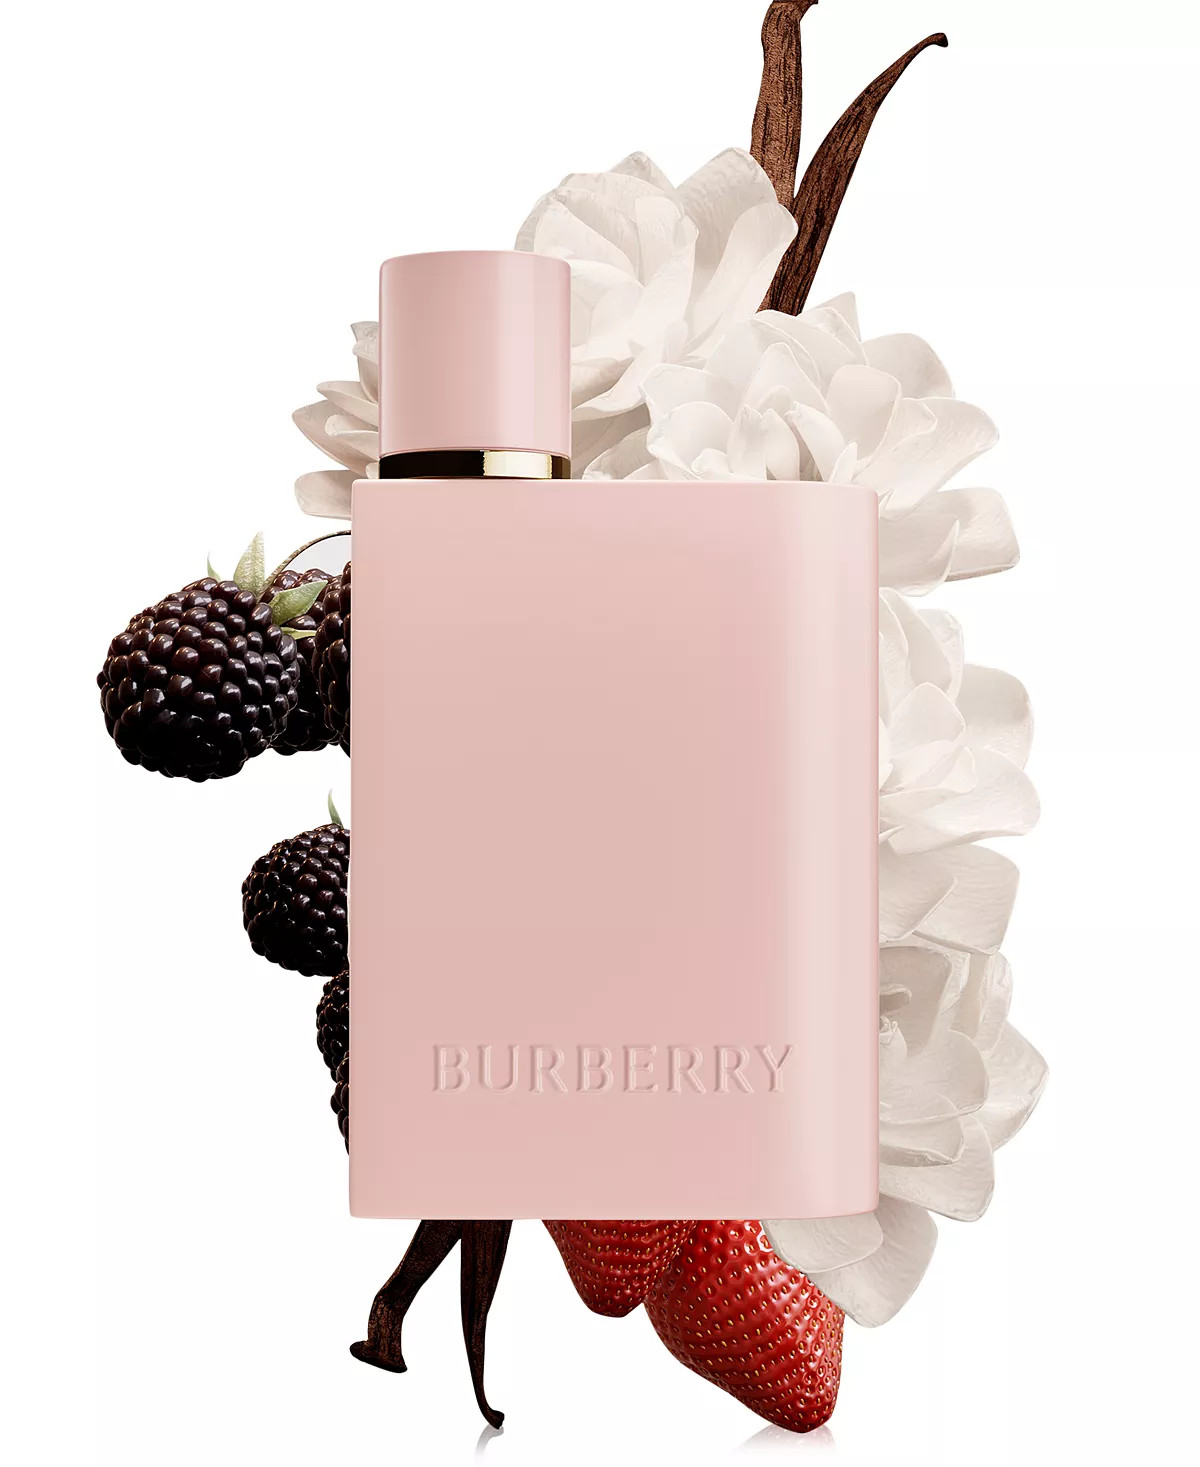 Burberry Her Elixir de Parfum ~ New Fragrances